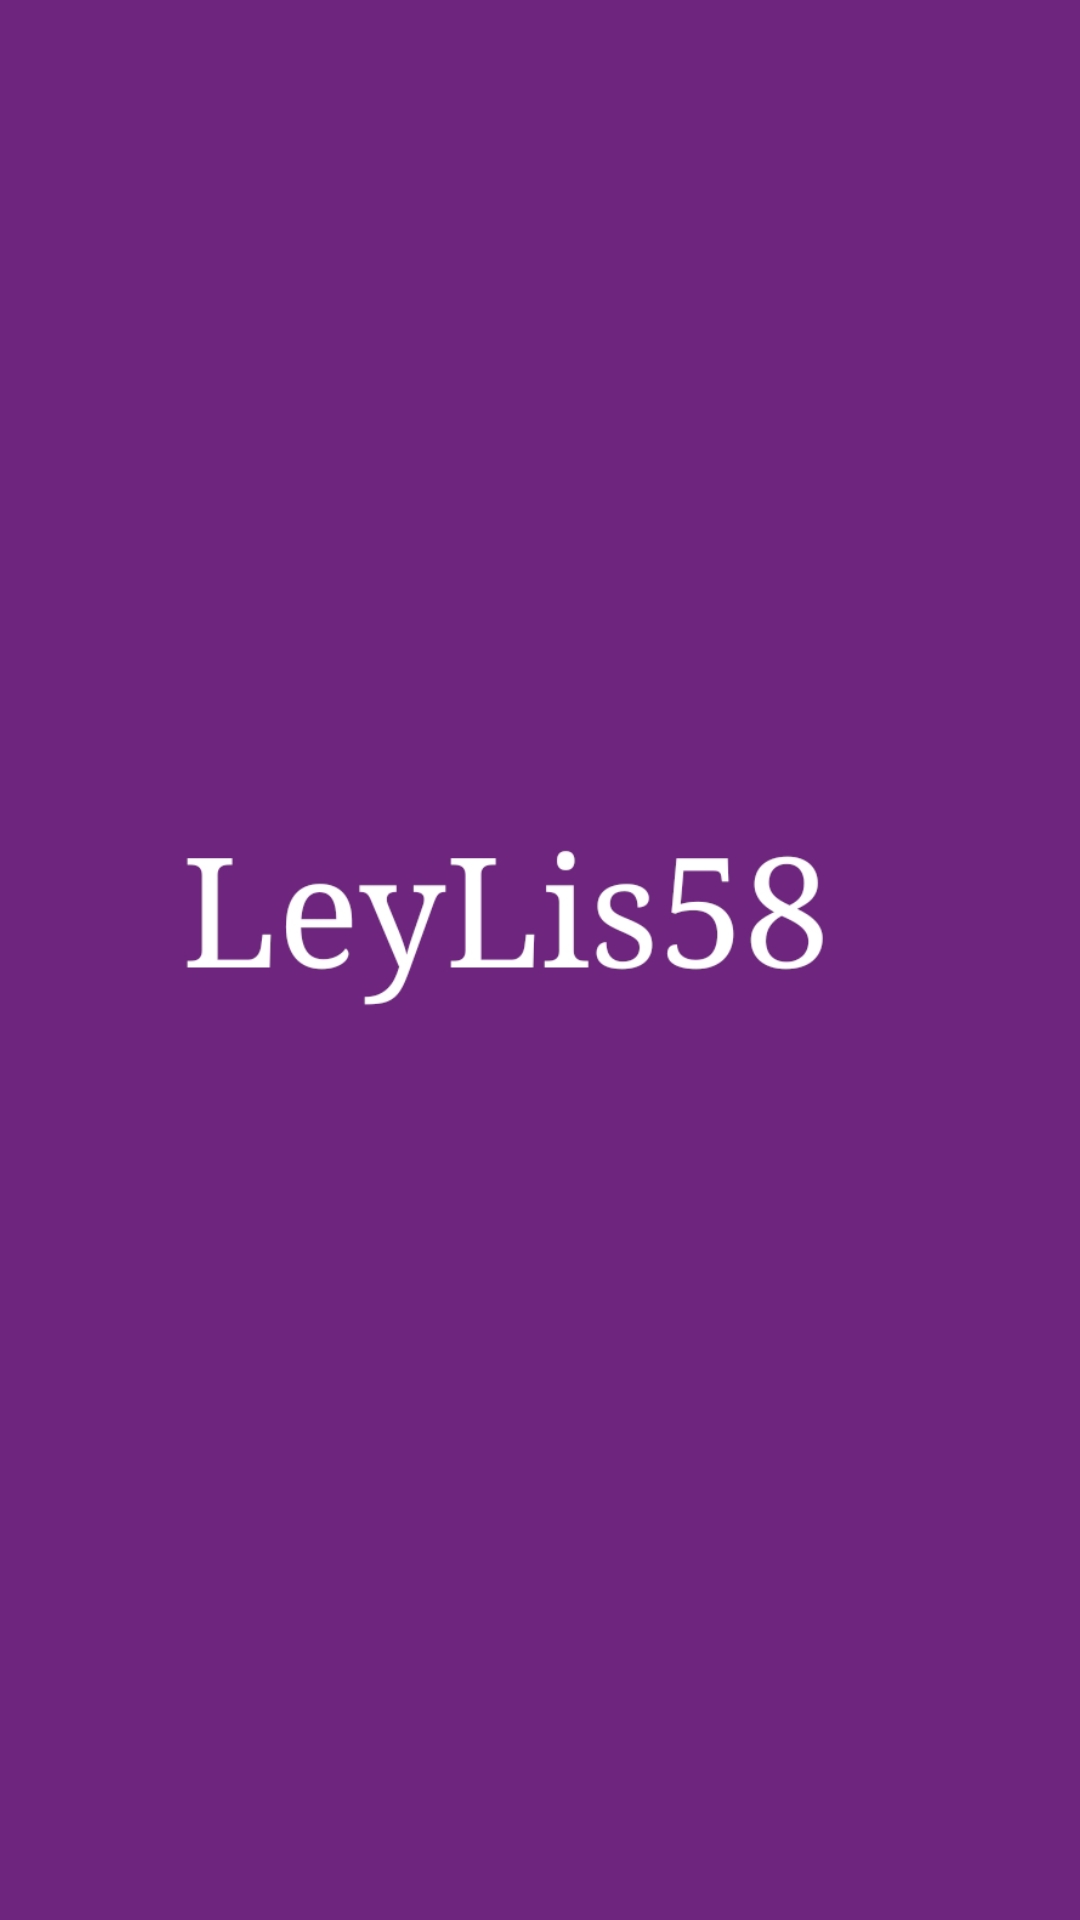 sLeyLis58